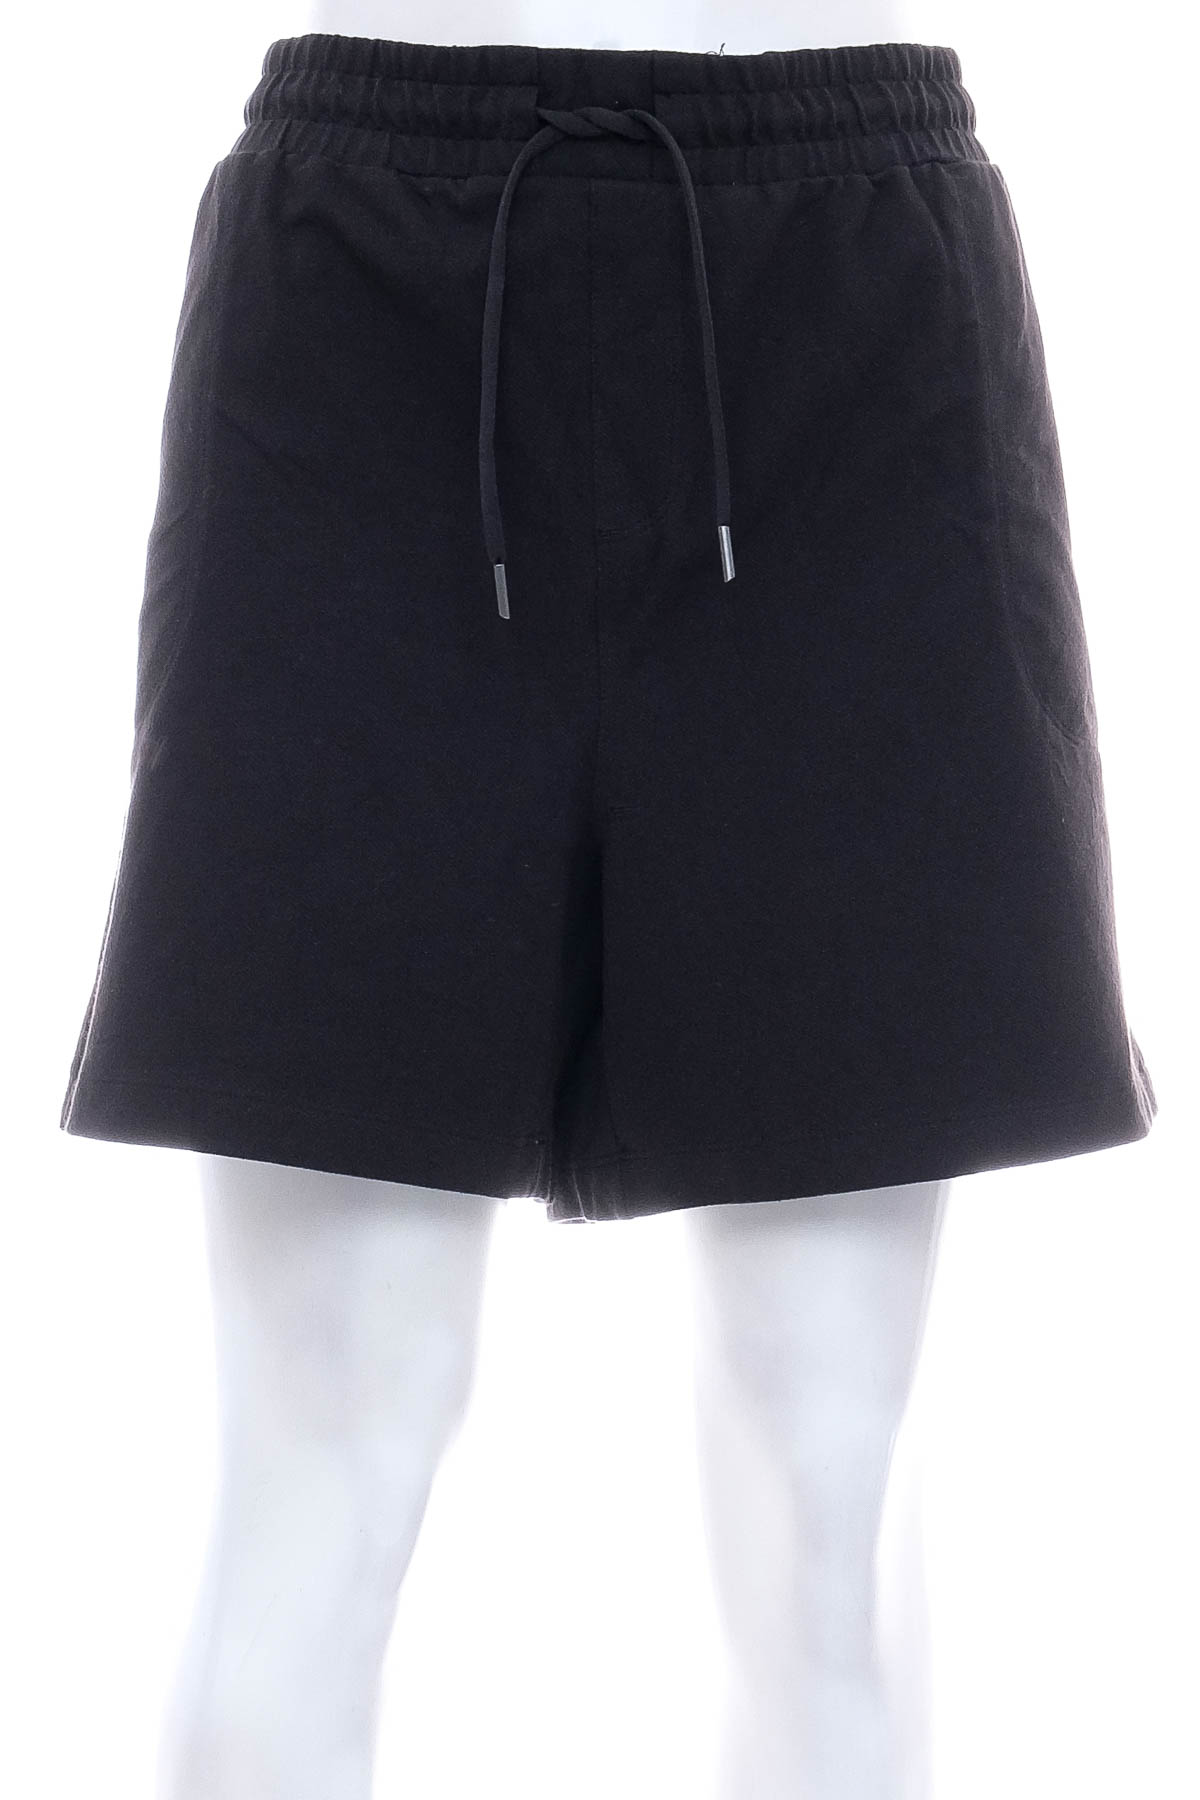 Female shorts - ATHLETIC WORKS - 0